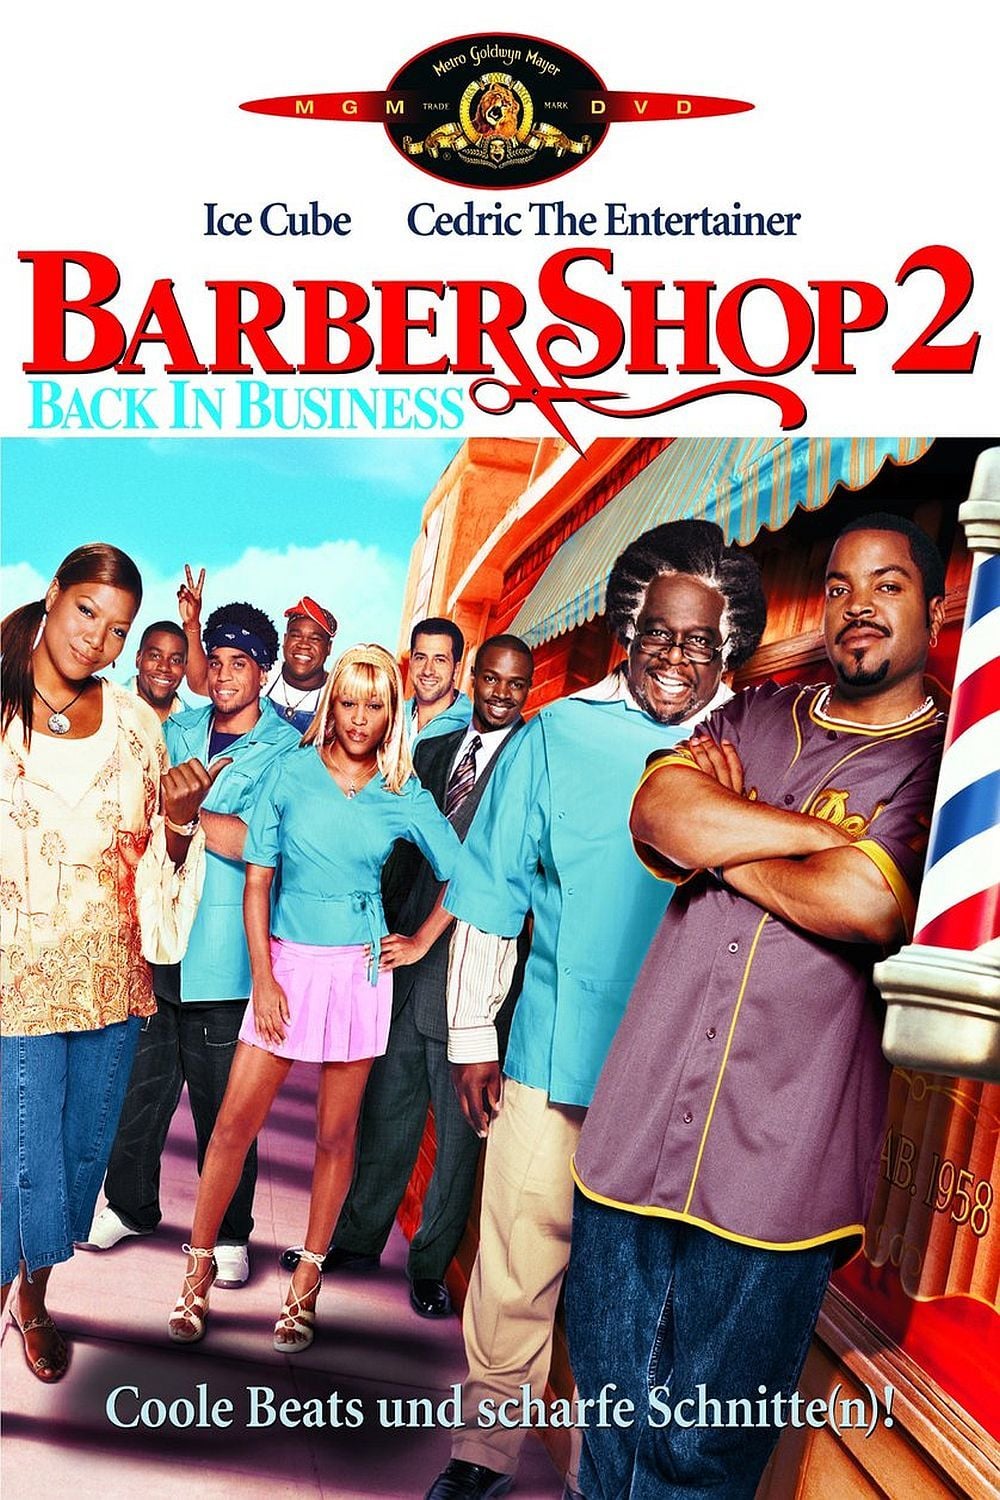 Plakat von "Barbershop 2 - Krass frisiert!"